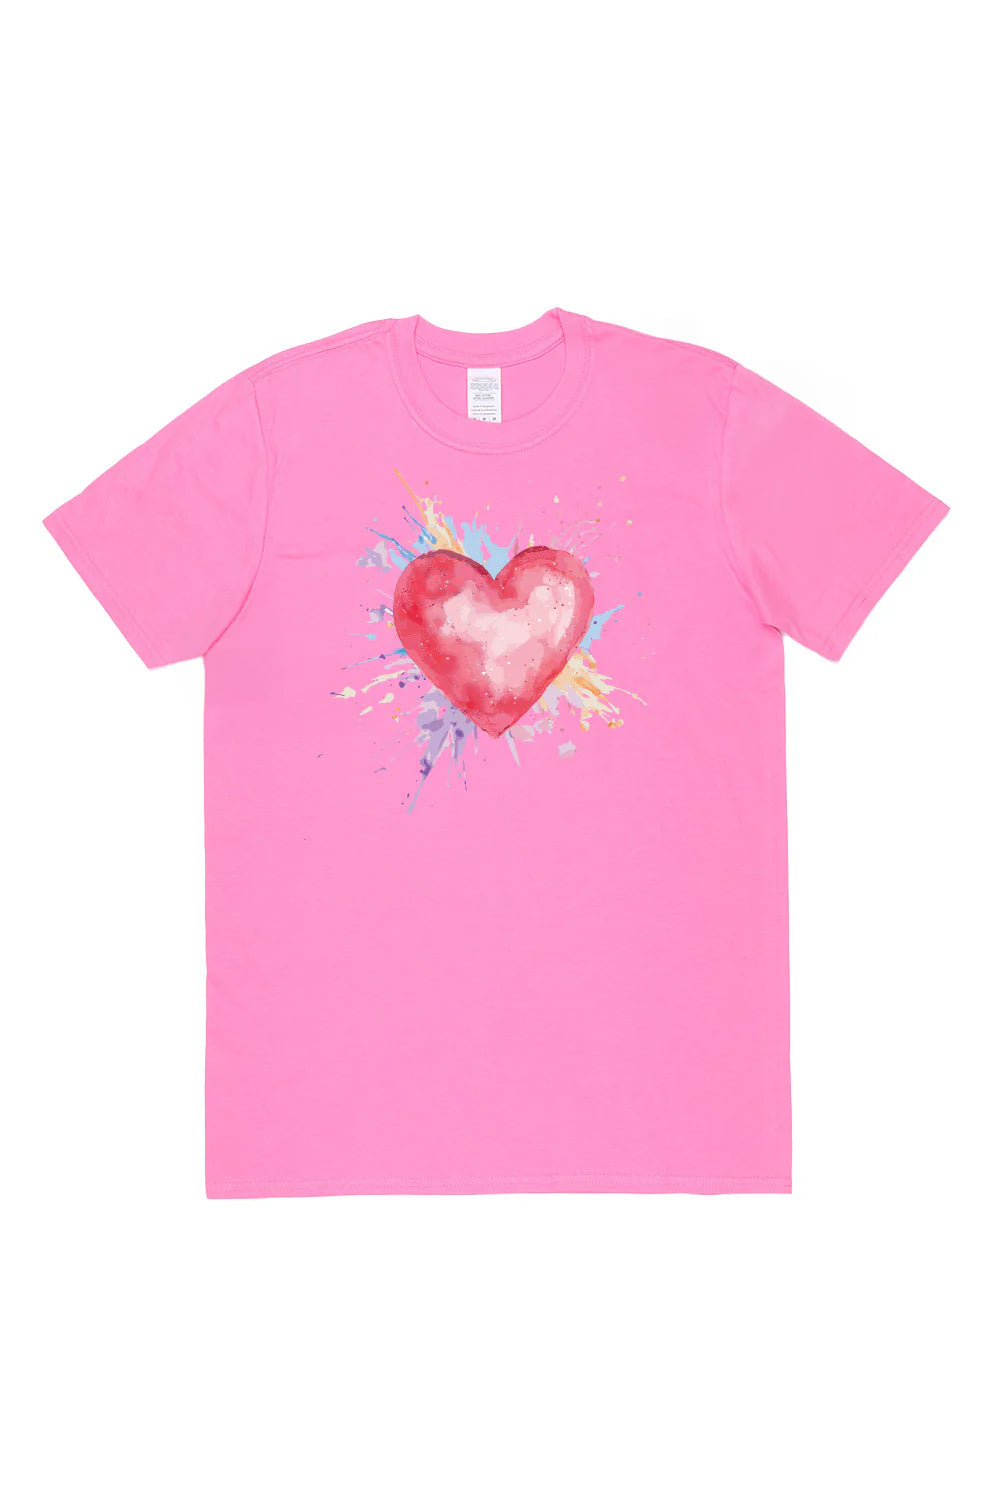 Heart With Pastel Splash T-Shirt in White (Custom Packs)